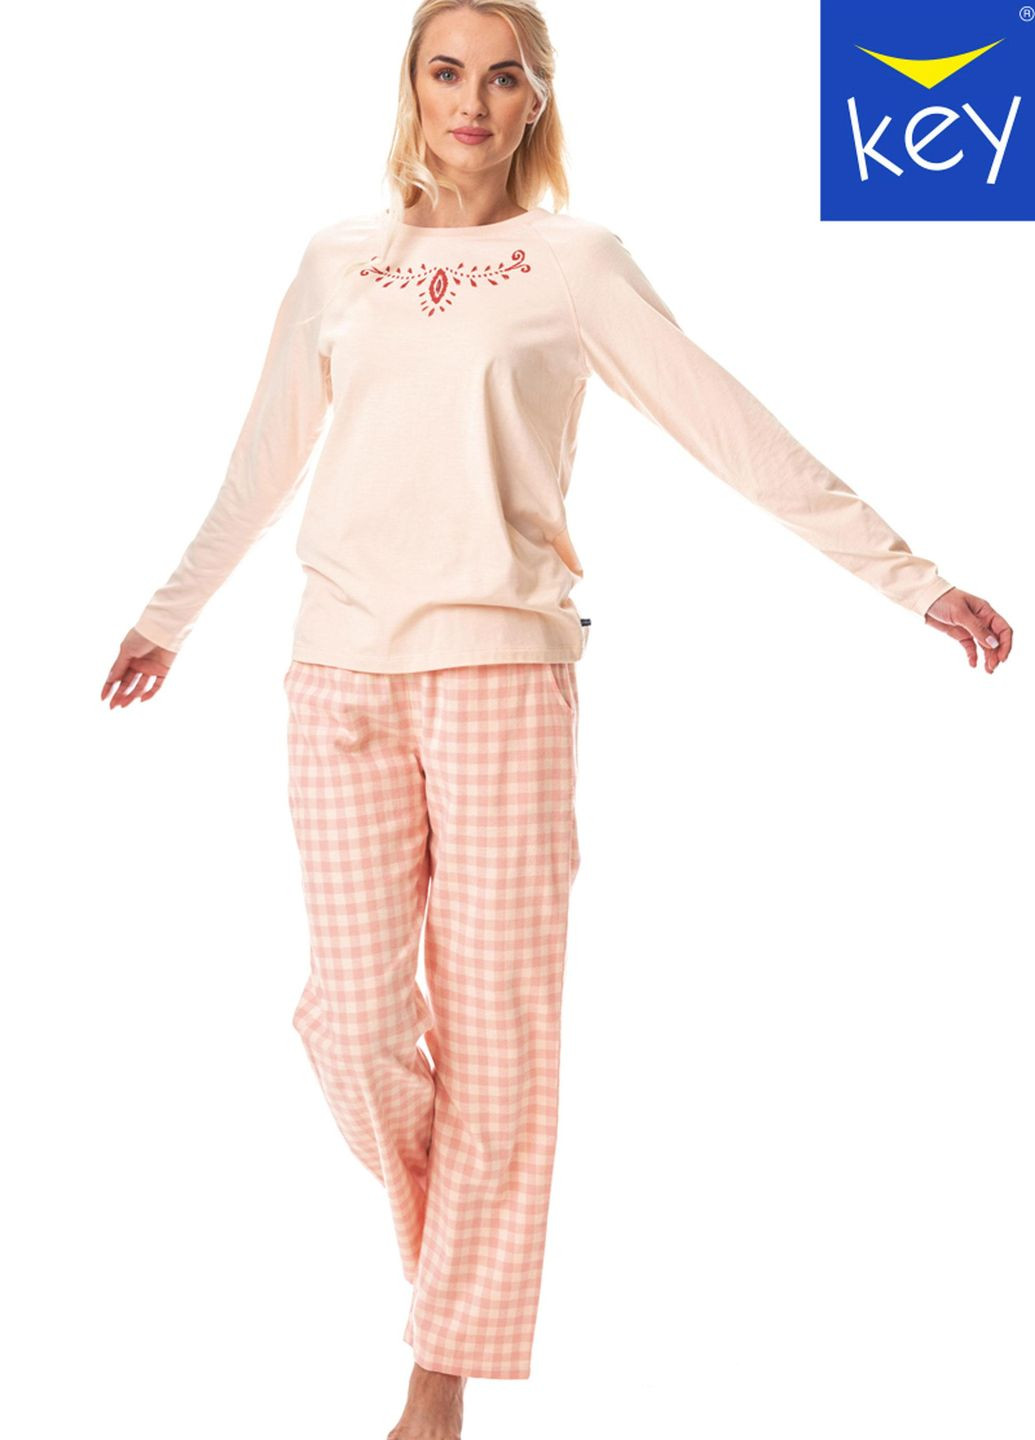 Розовая пижама женская xl mix принт lns 447 b23 Key